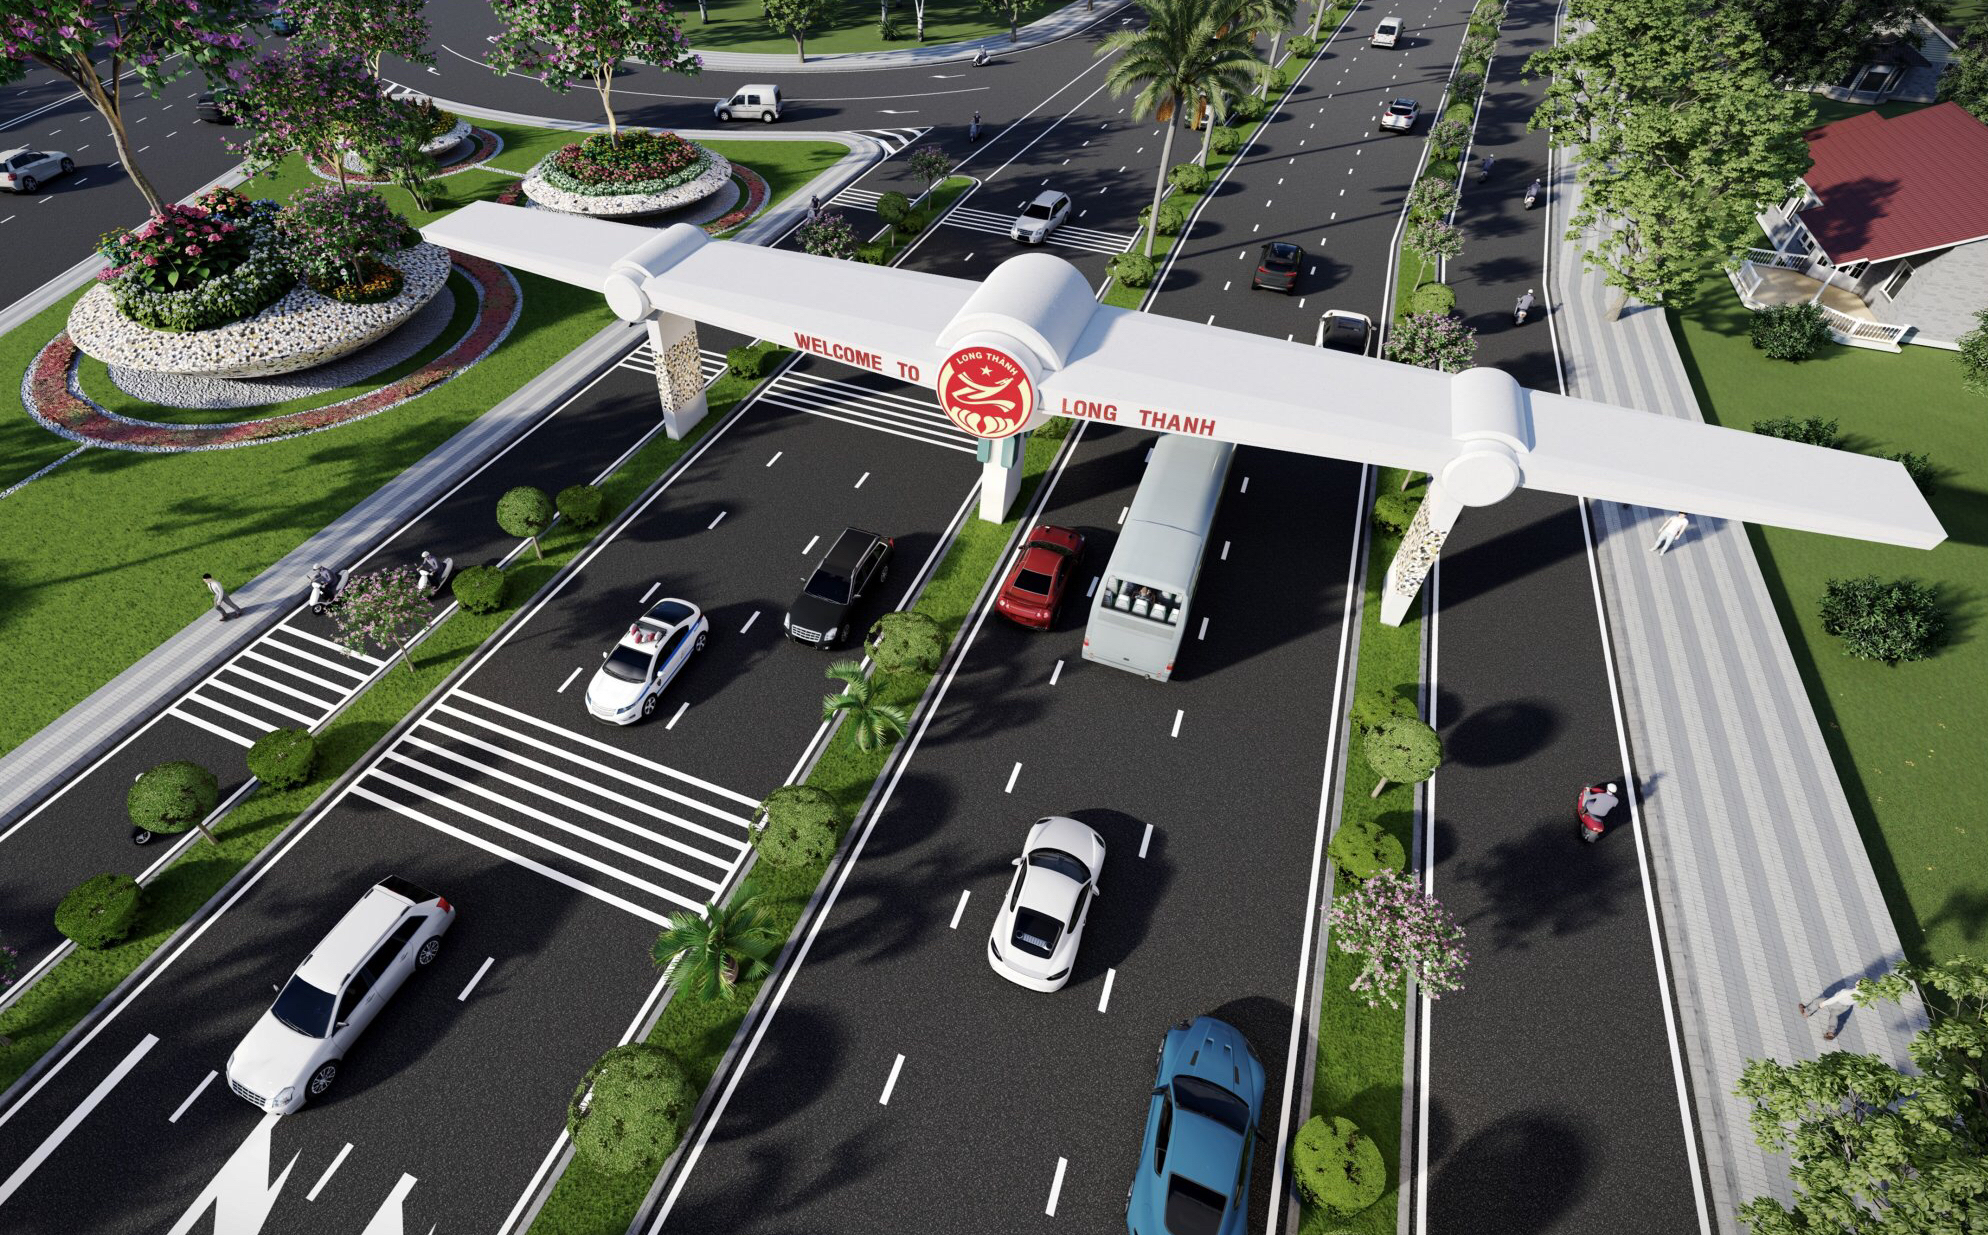 Cổng chào ở khu vực mũi tàu phía Bắc TT.Long Thành được đơn vị tư vấn thiết kế dựa trên mô hình máy bay đang cất cánh, tạo điểm nhấn cho đô thị sân bay Long Thành trong tương lai.